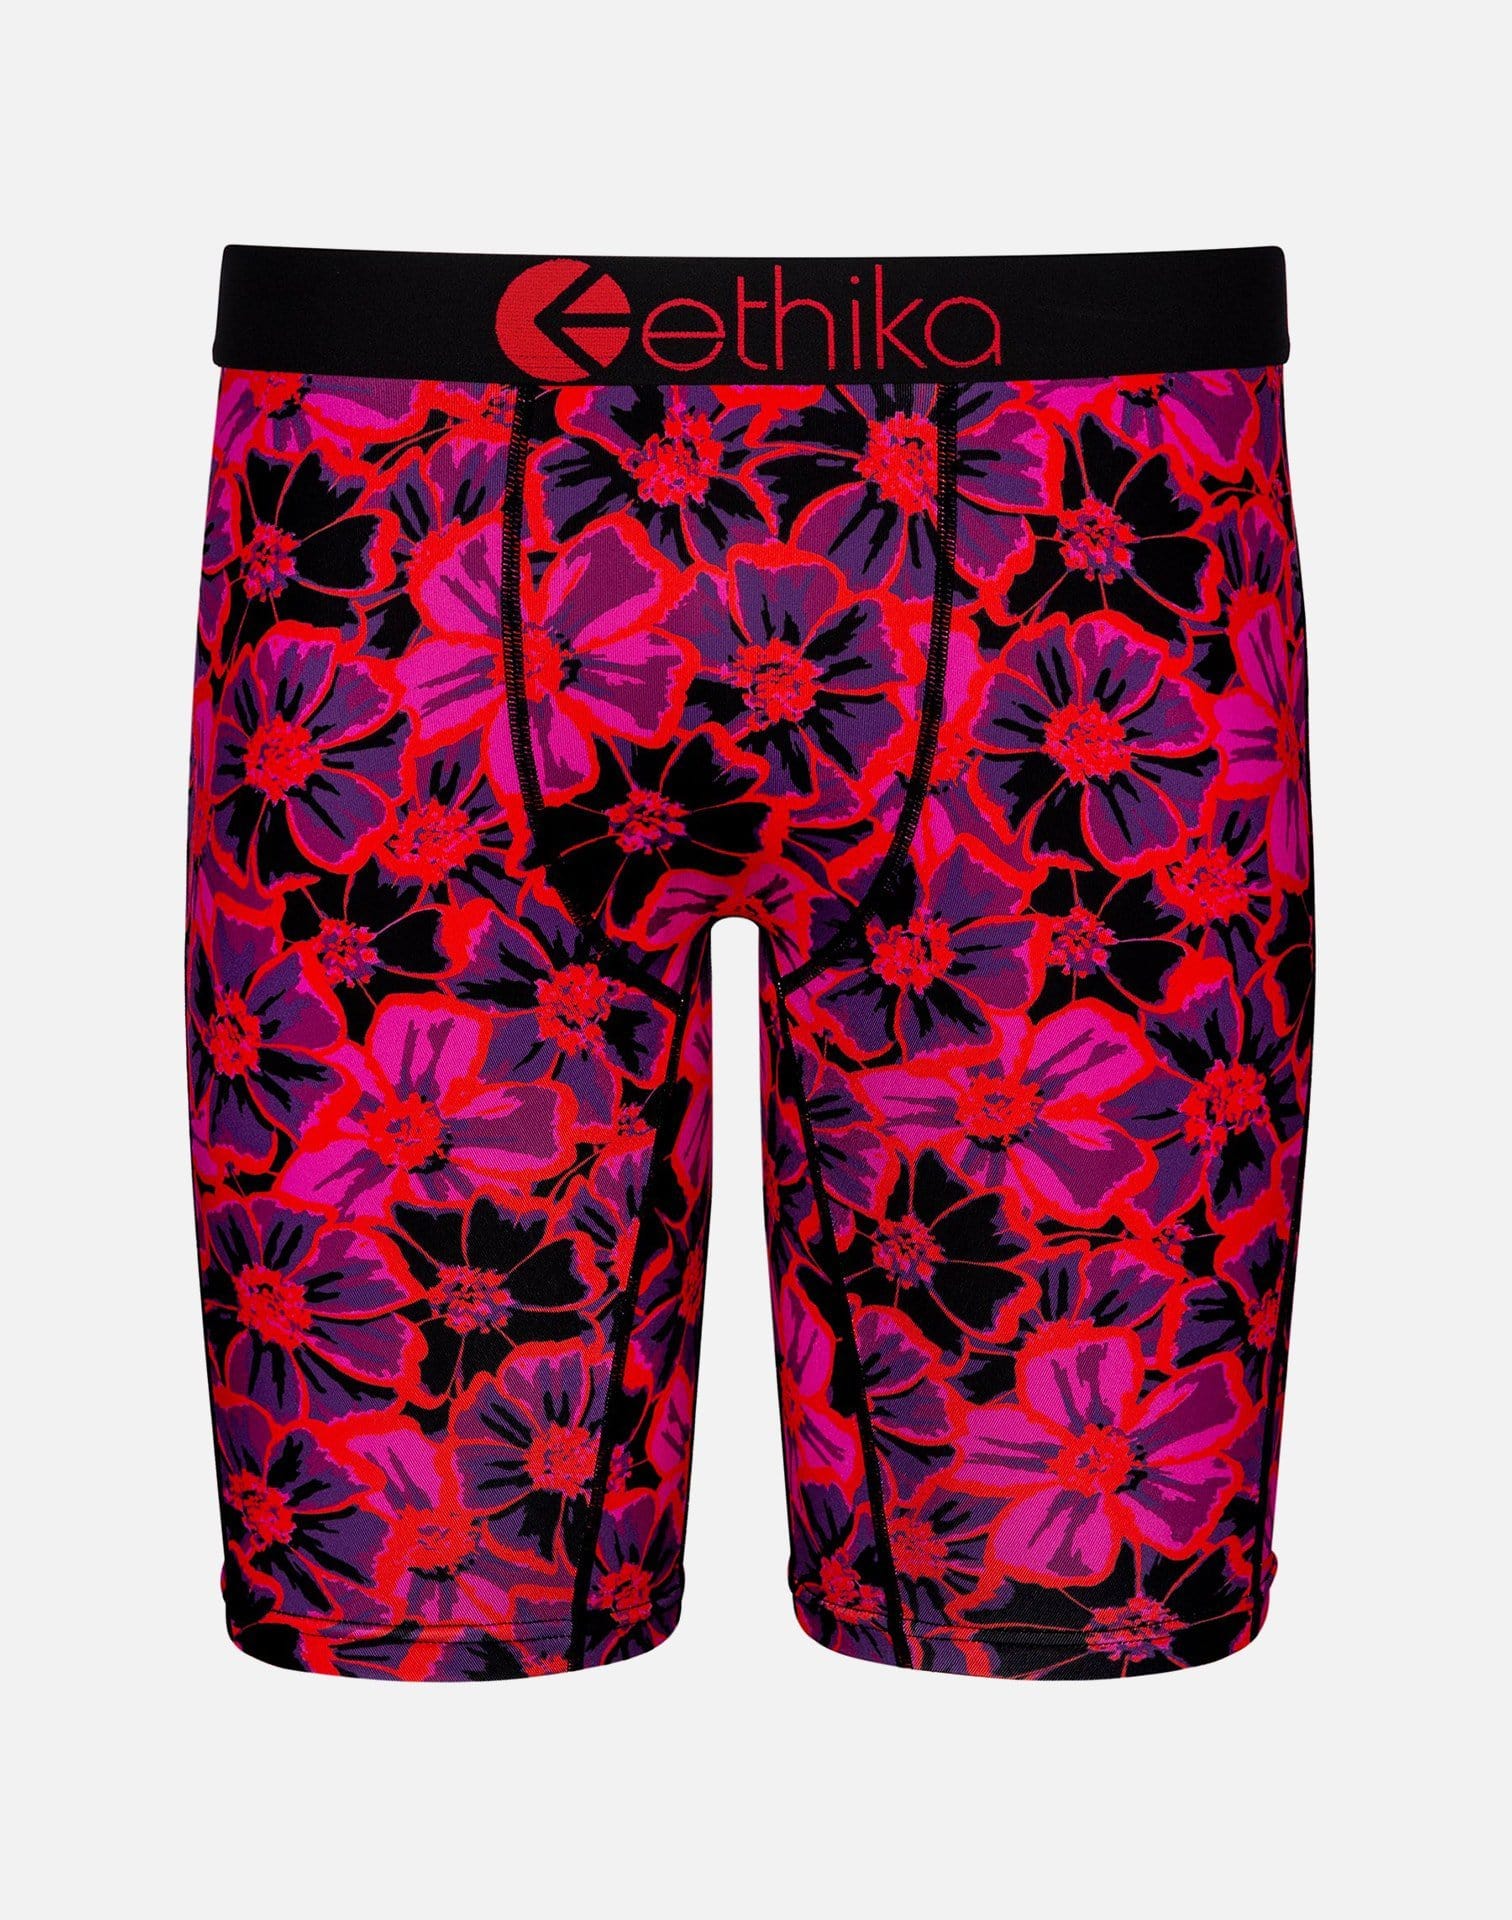 Ethika Men's Neon Floral Boxer Briefs